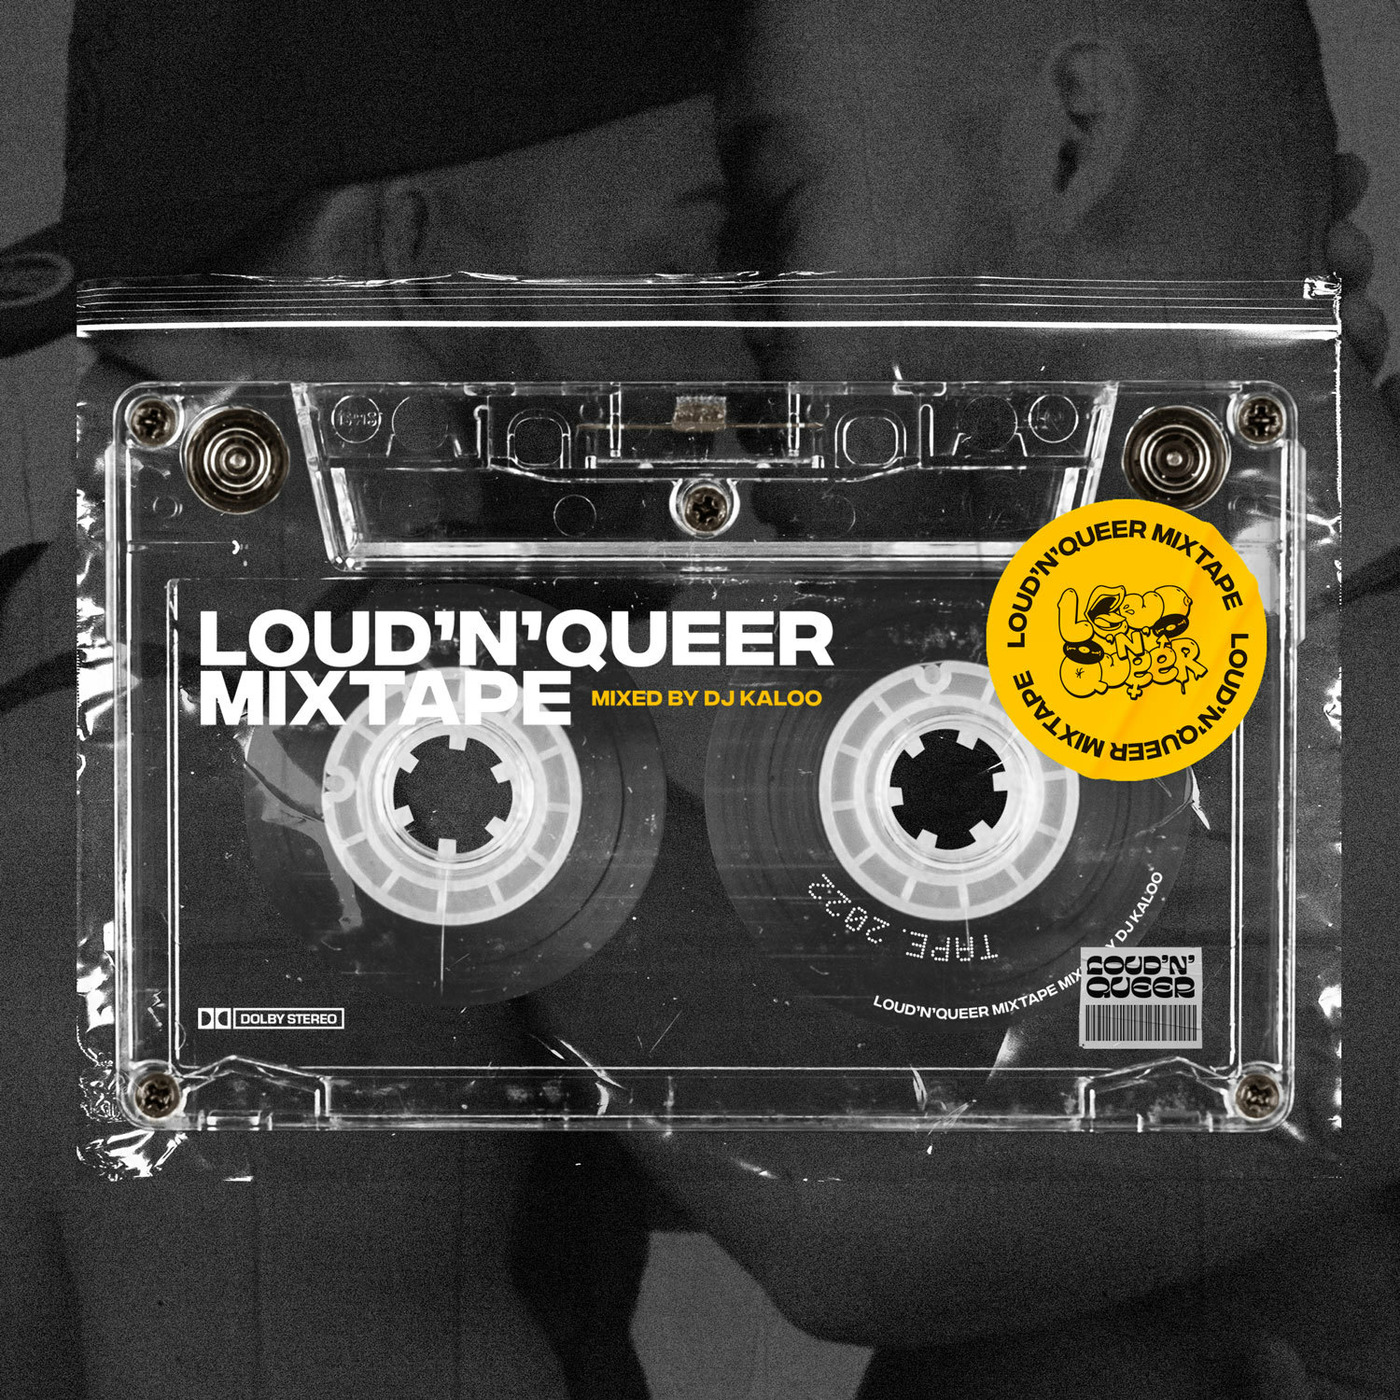 Loud'N'Queer Mixtape by DJ Kaloo - April 2022